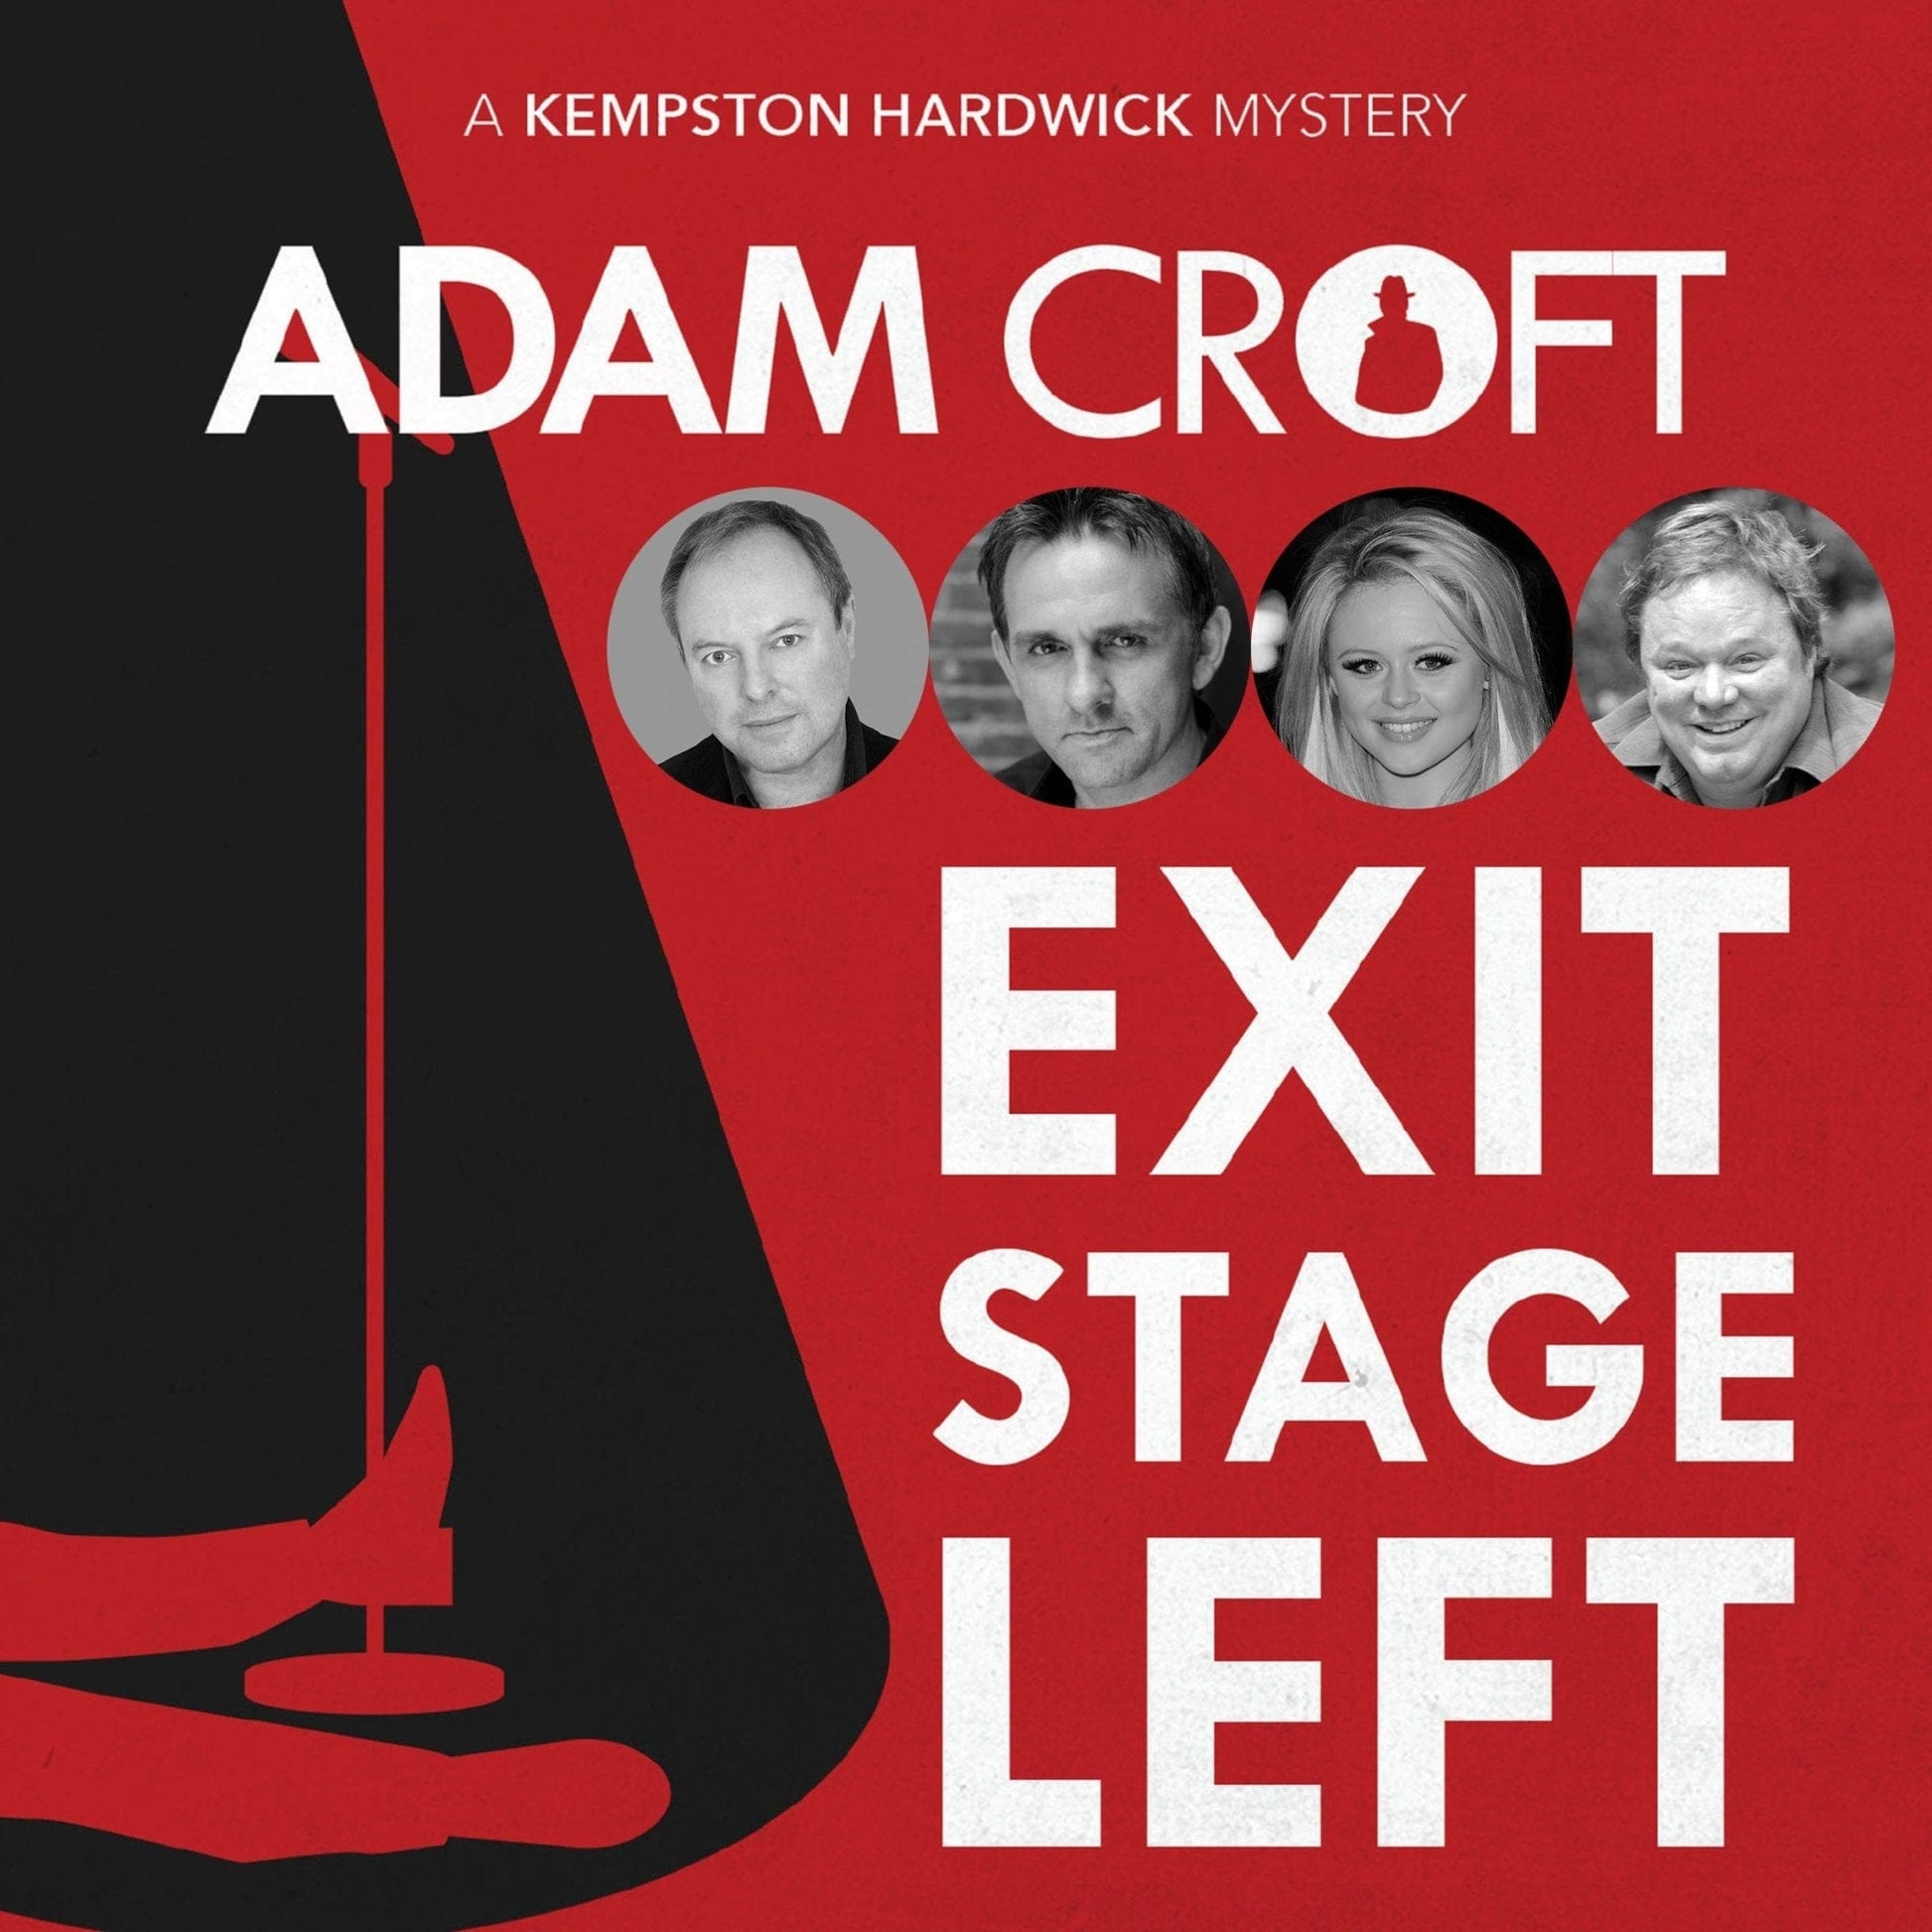 Exit Stage Left - Adam Croft